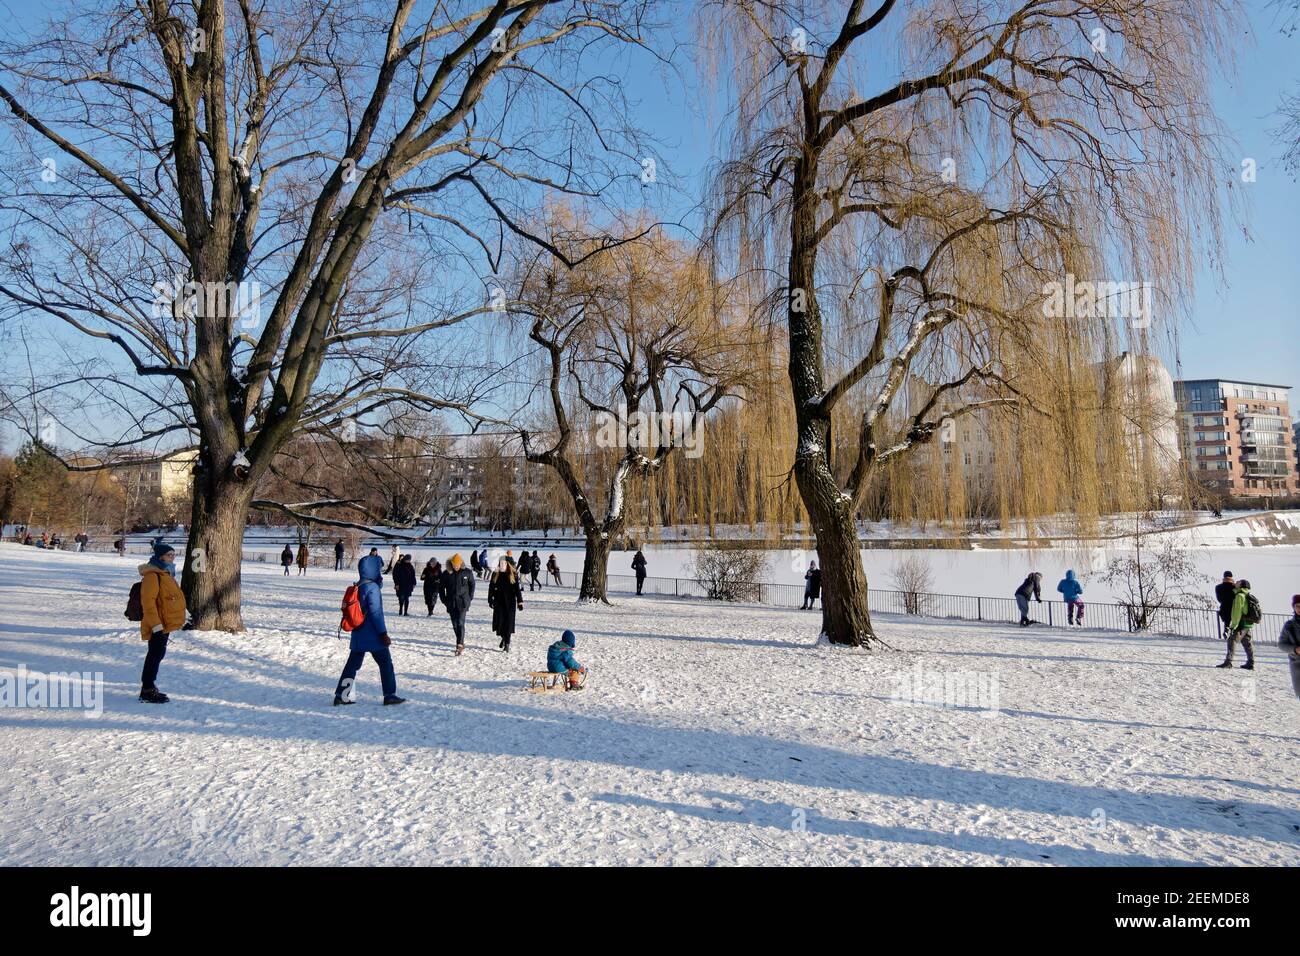 Am Landwehrkanal im Winter, Wintereinbruch im Februar 2021, Spaziergänger in winterlicher Landschaft, Berlin Stockfoto